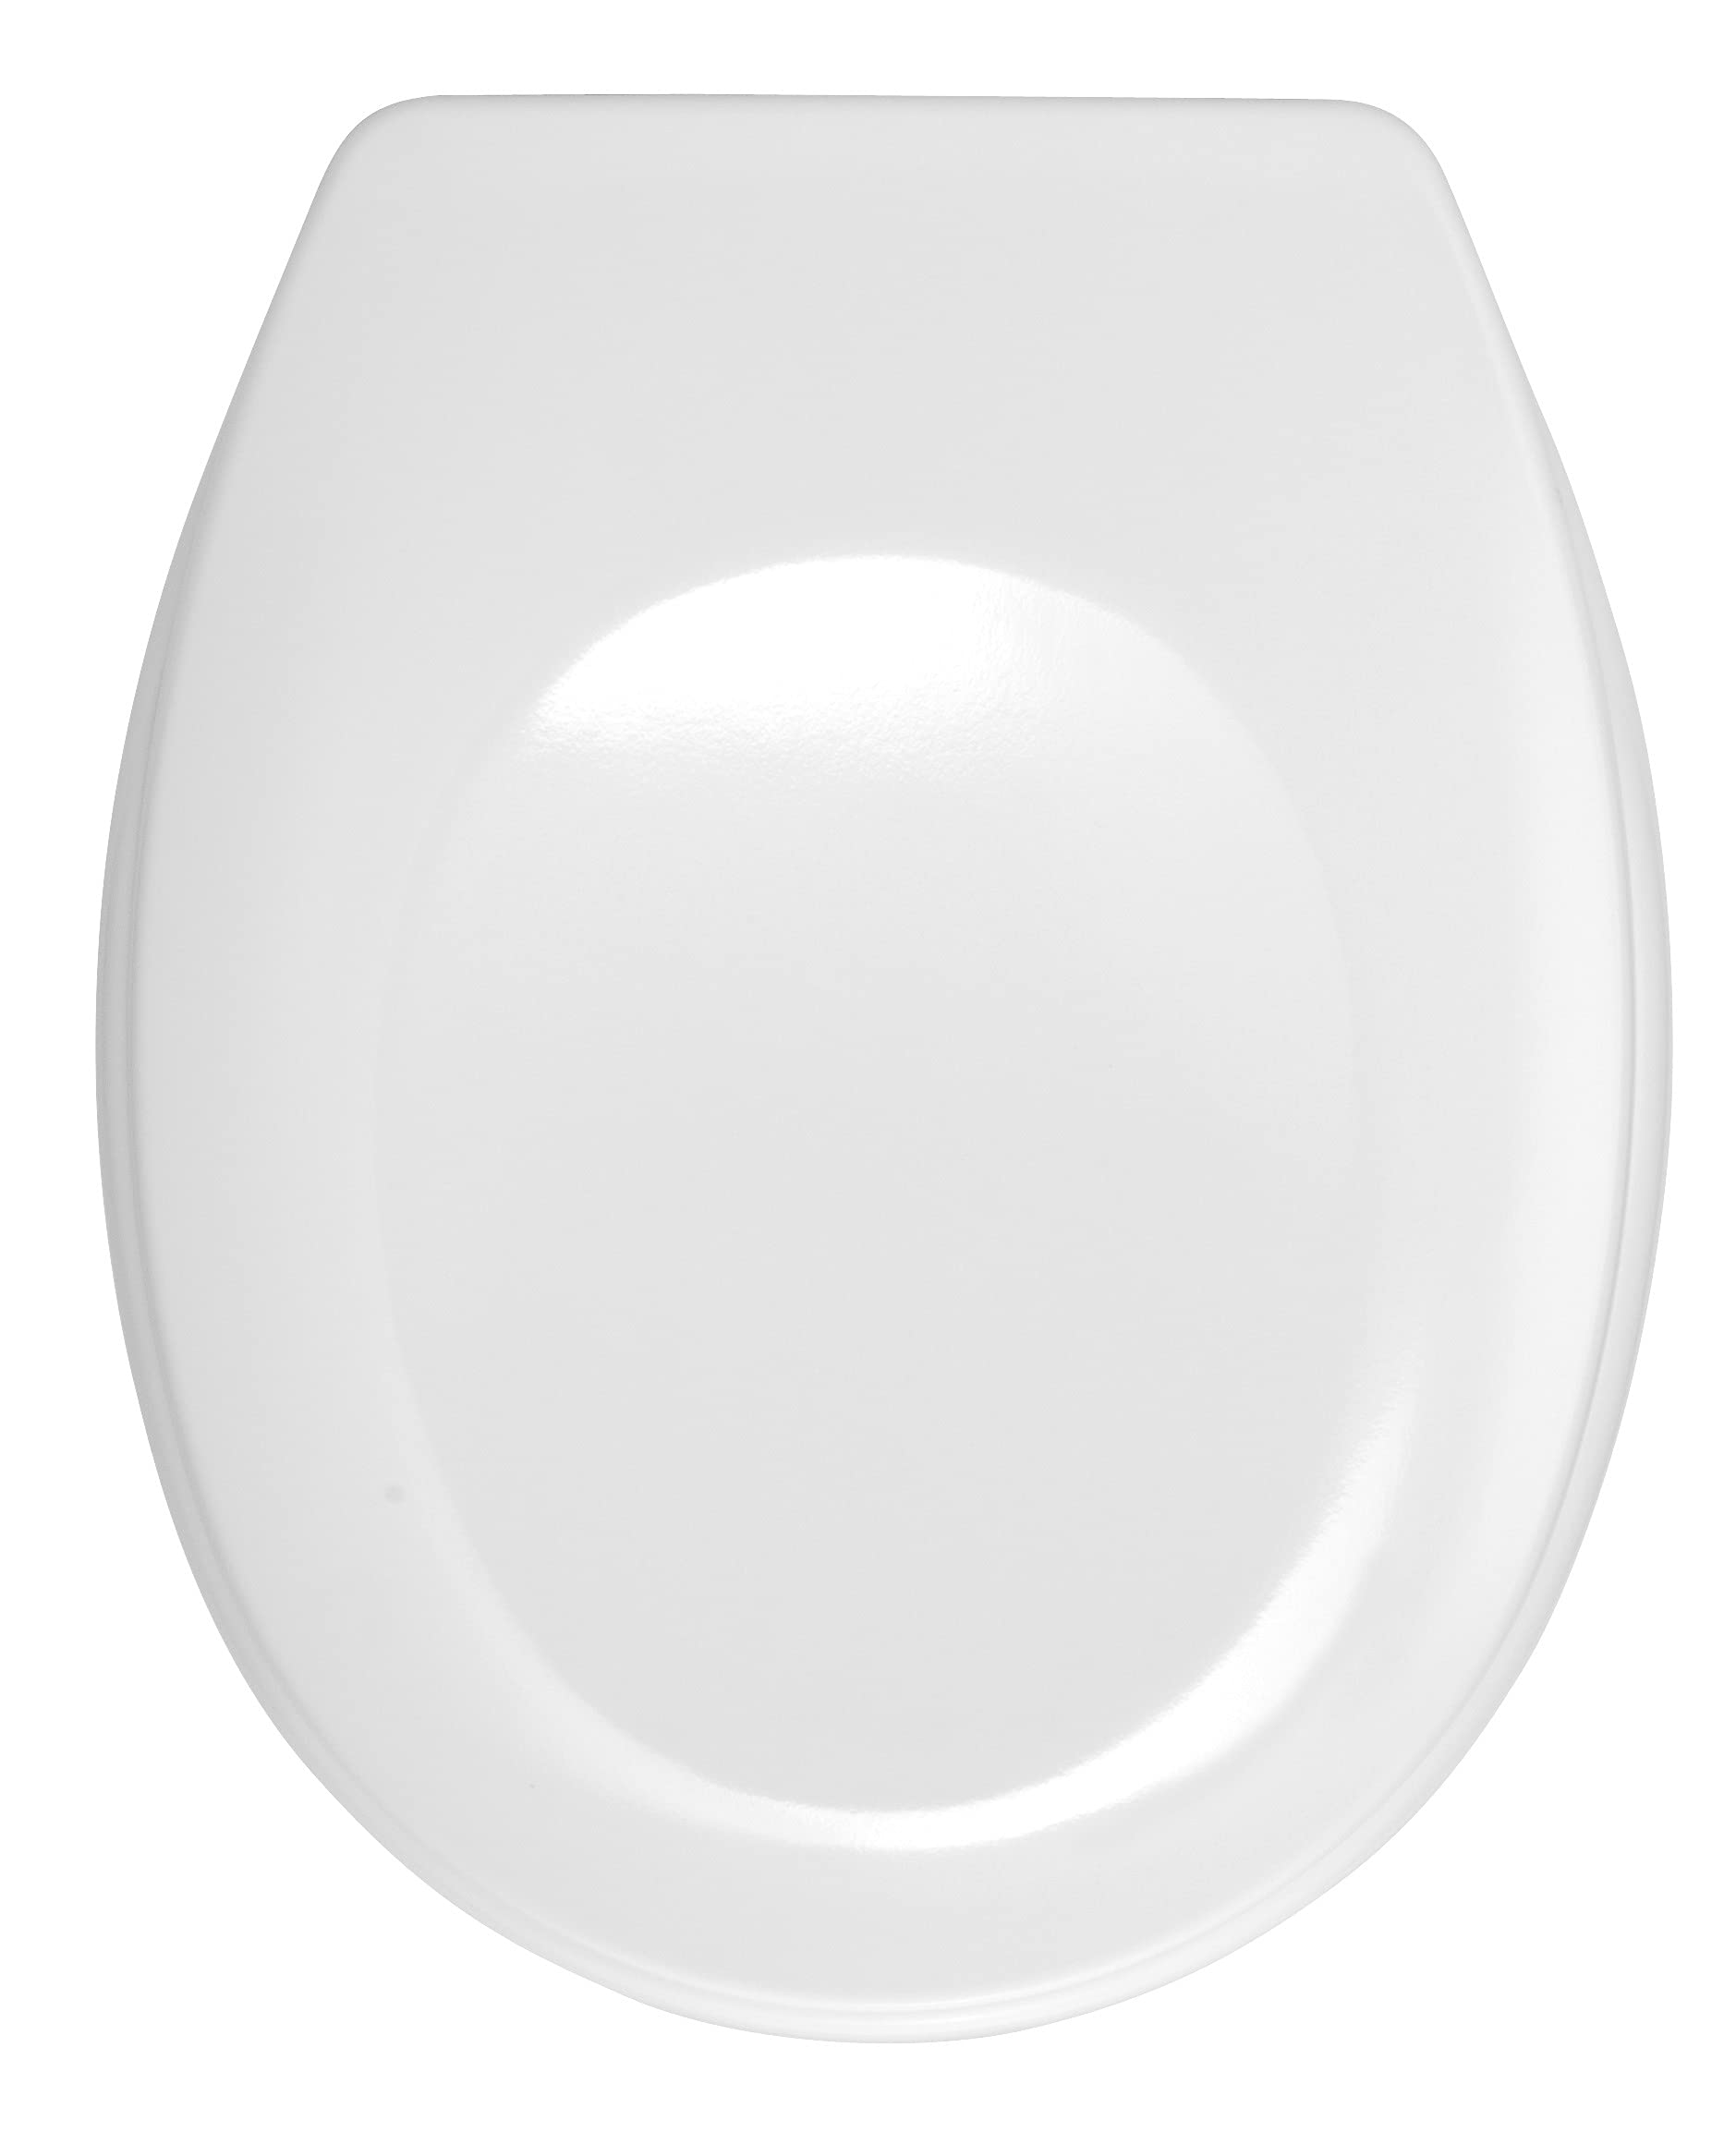 WENKO WC-Sitz Bergamo Weiß - Antibakterieller Toilettensitz, verstellbare, rostfreie Edelstahlbefestigung, Duroplast, 35 x 44.4 cm, Weiß